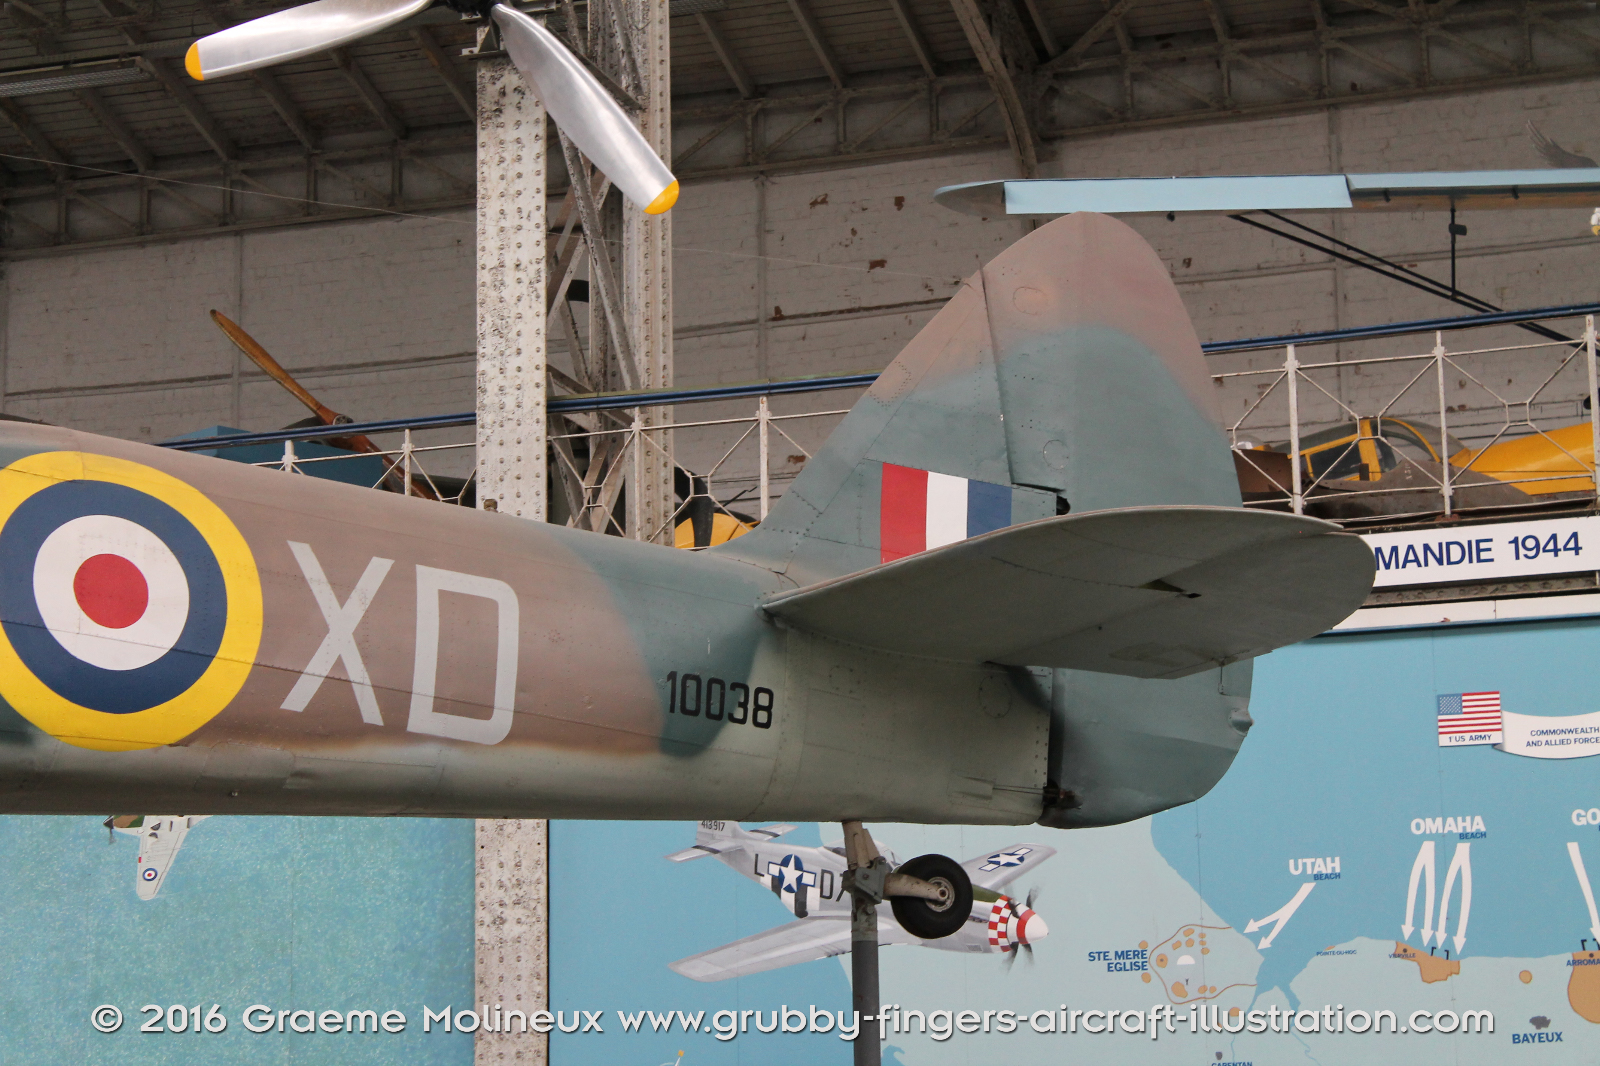 Bristol_Blenheim_MkIV_Walkaround_10083_RAF_Belgium_Museum_2015_24_GraemeMolineux